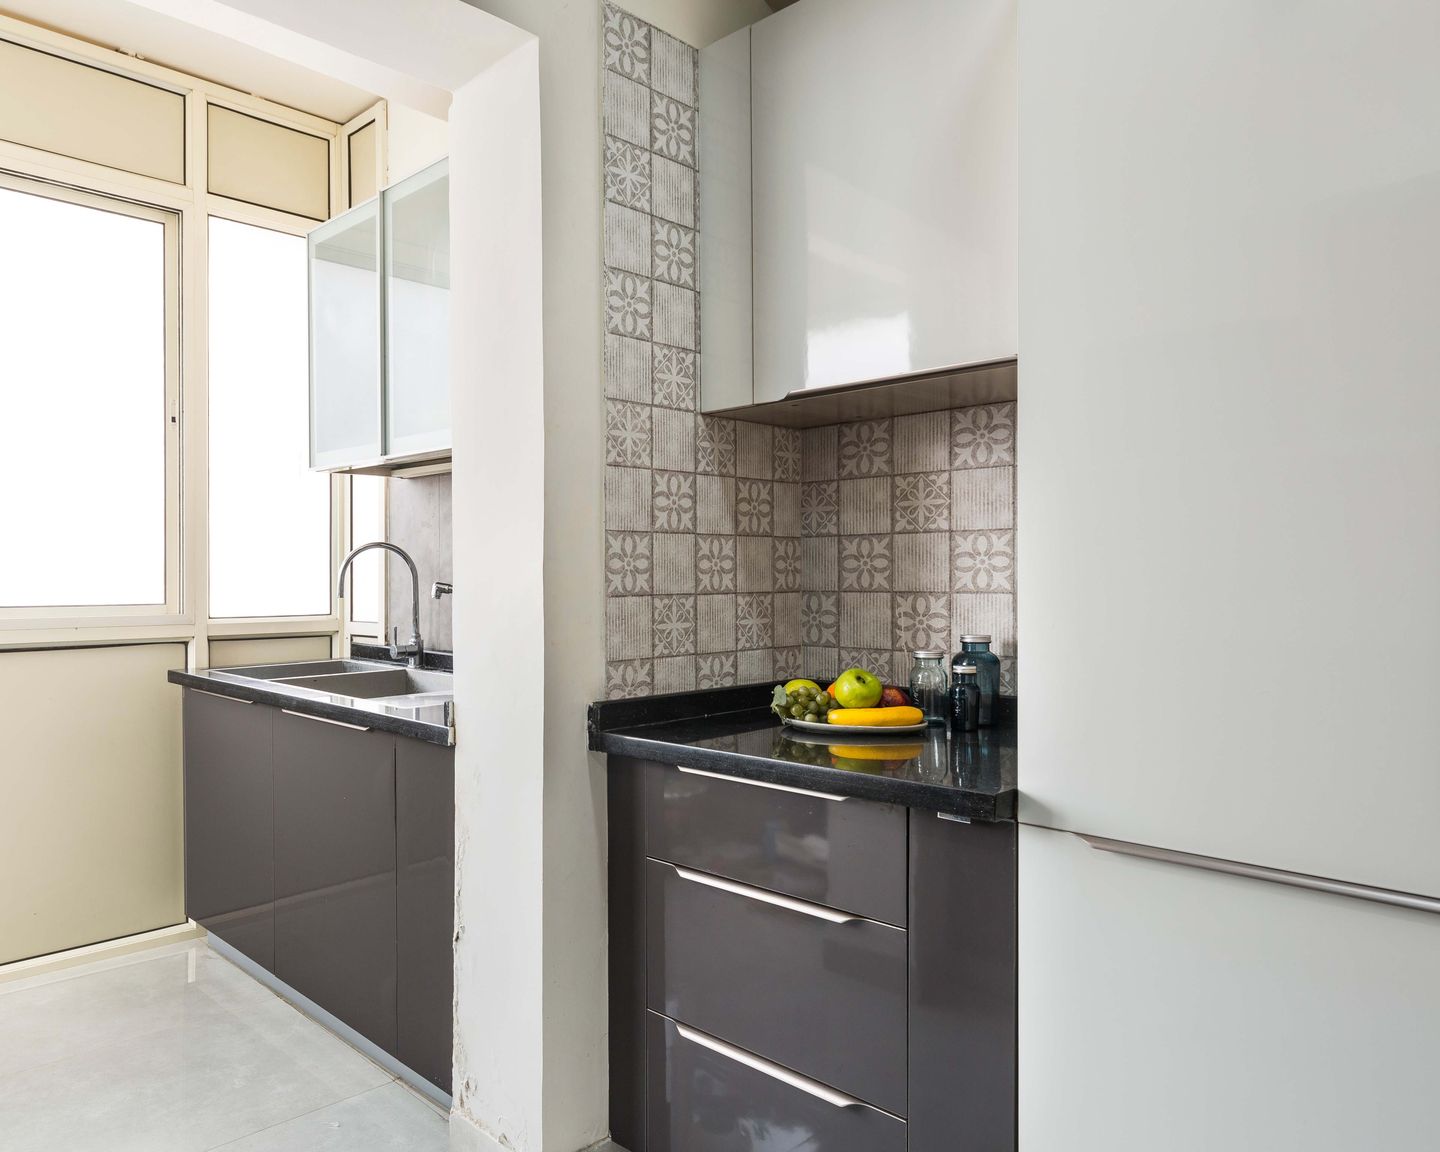 Contemporary Parallel Modular Kitchen Design In Dark Grey